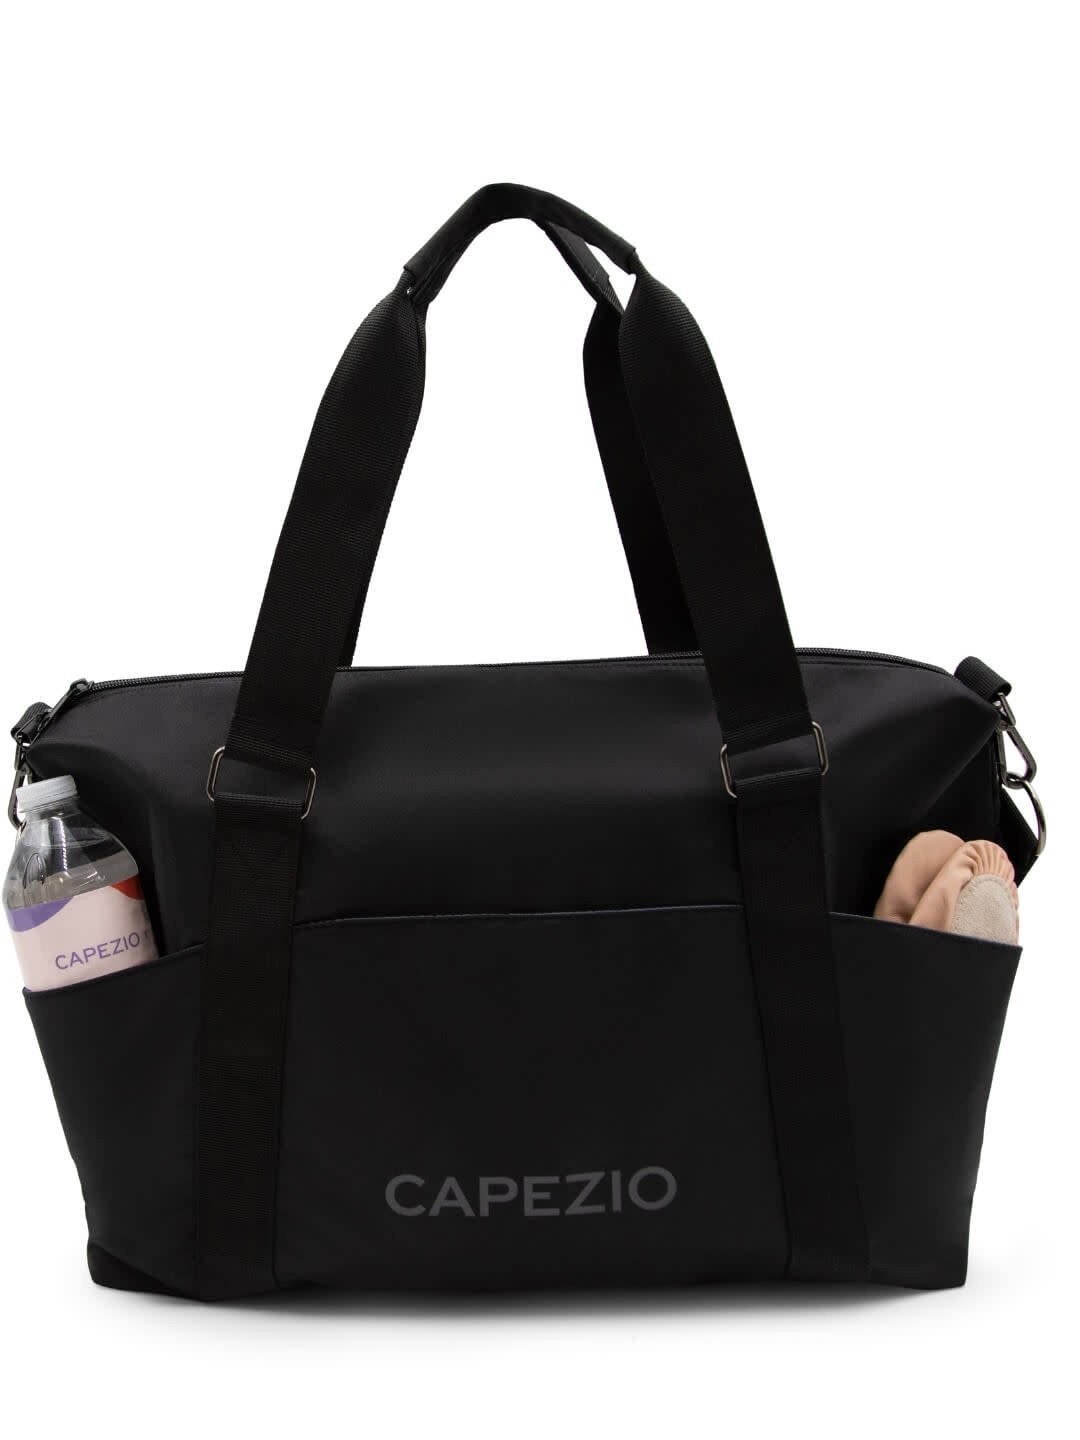 Capezio B311- Casey Sac de Sport Fourre-Tout